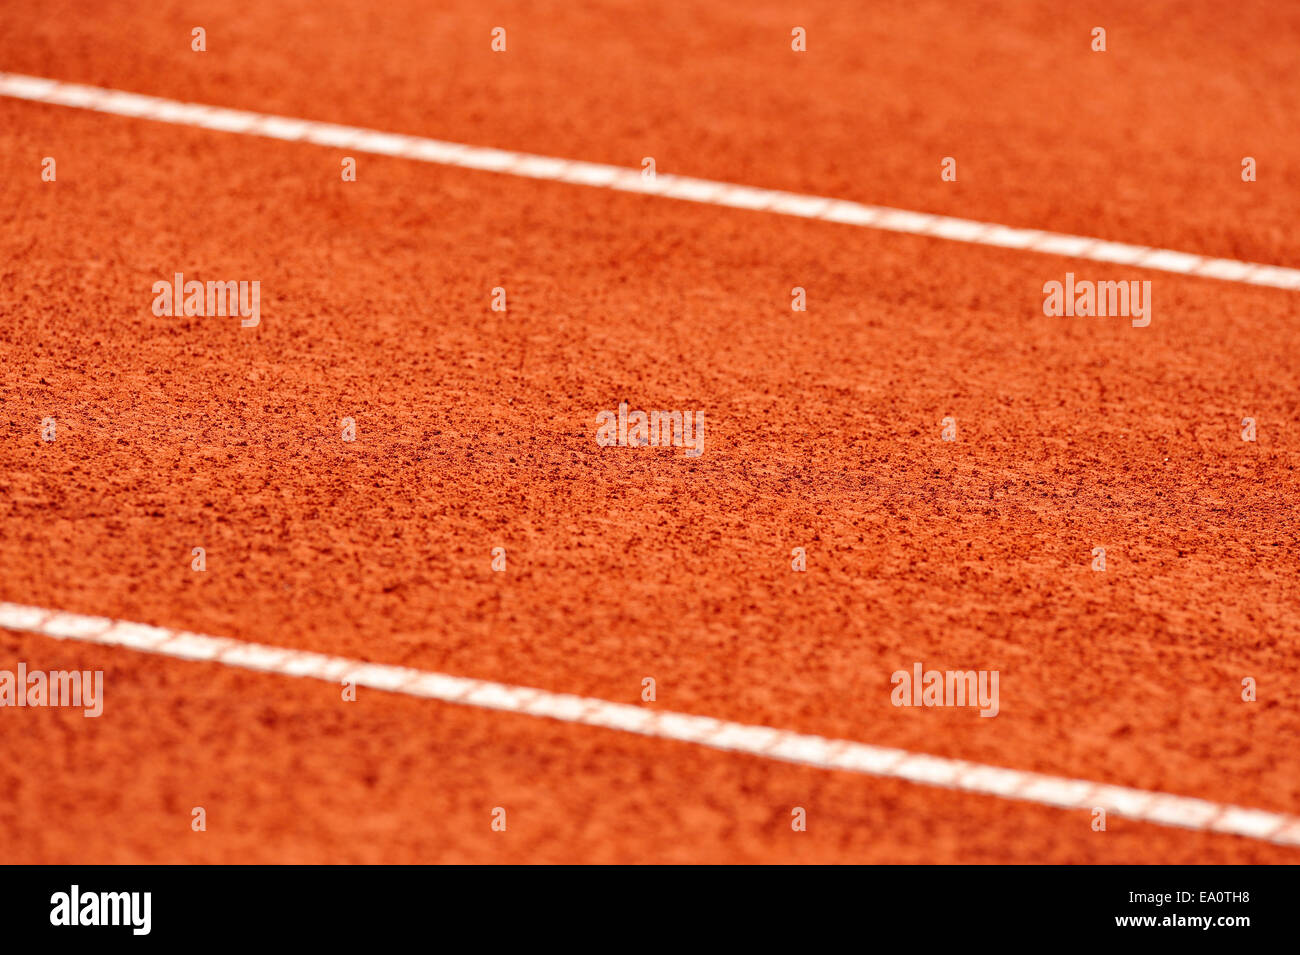 Dettaglio con margine su un umido campo da tennis in terra battuta Foto Stock